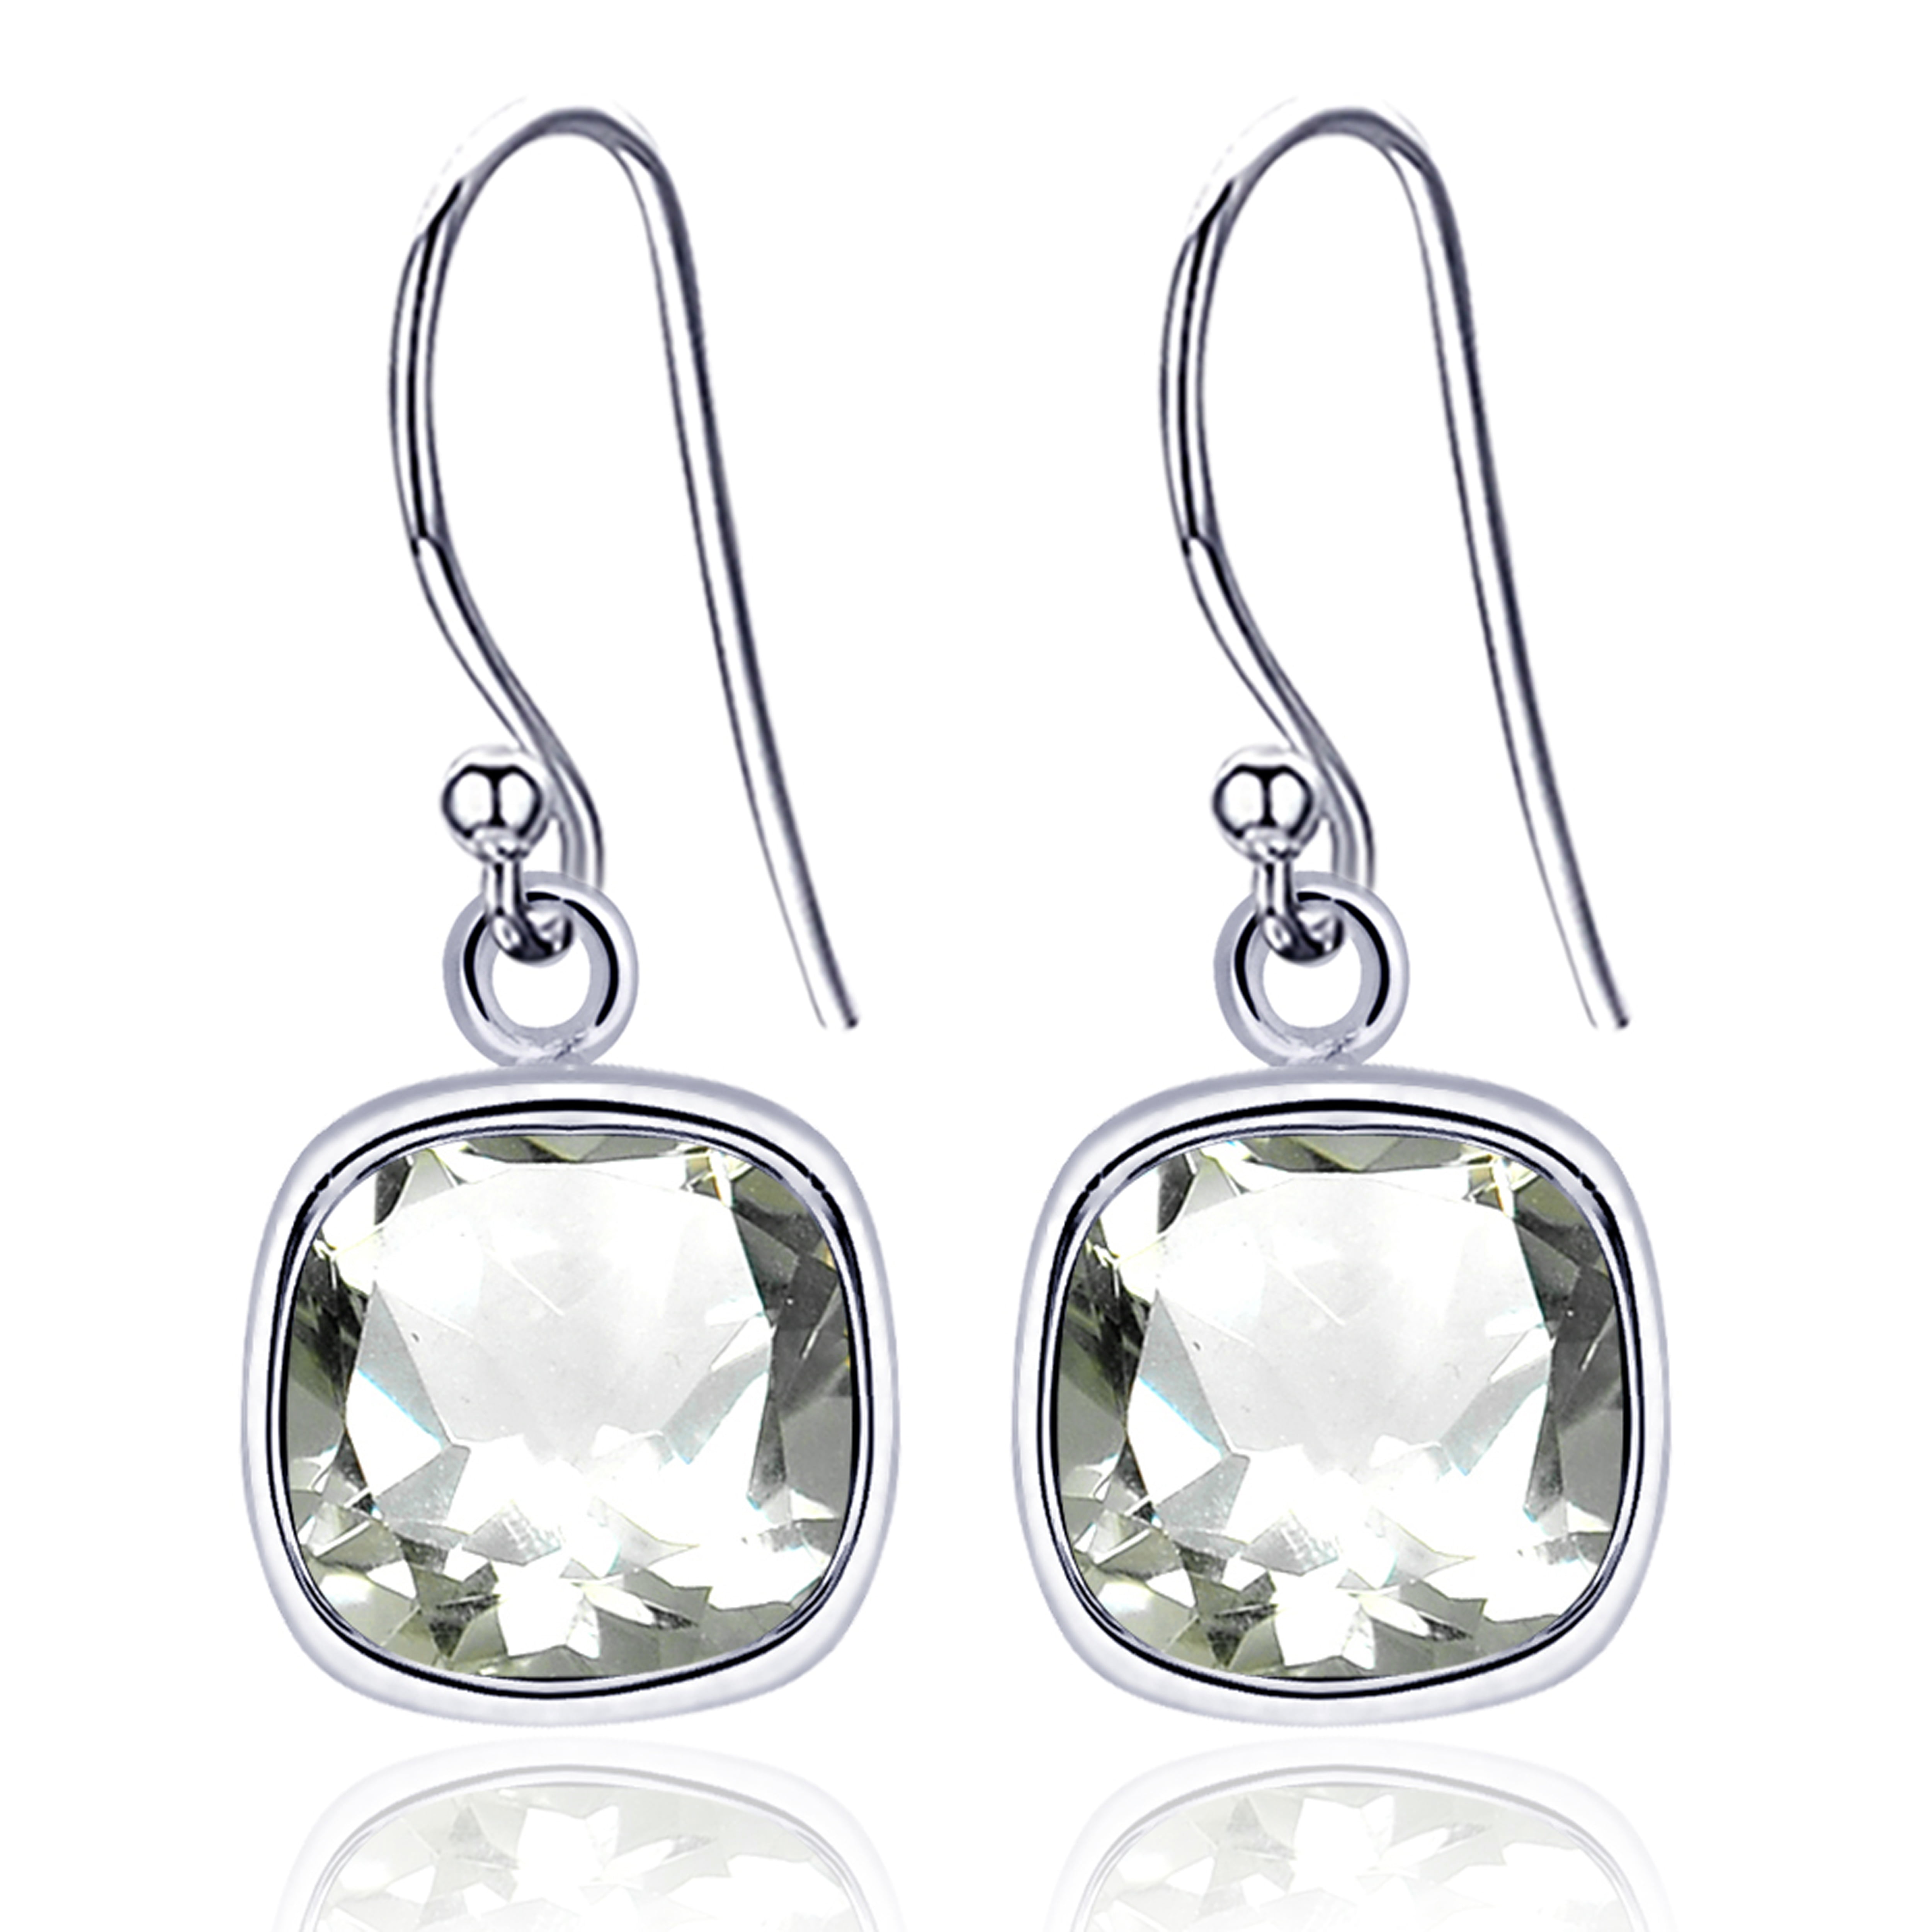 2019 Spring Release Shine 18K Gold Overlay Sterling Silver Hearts Hoop Earrings Women Fine Jewelry